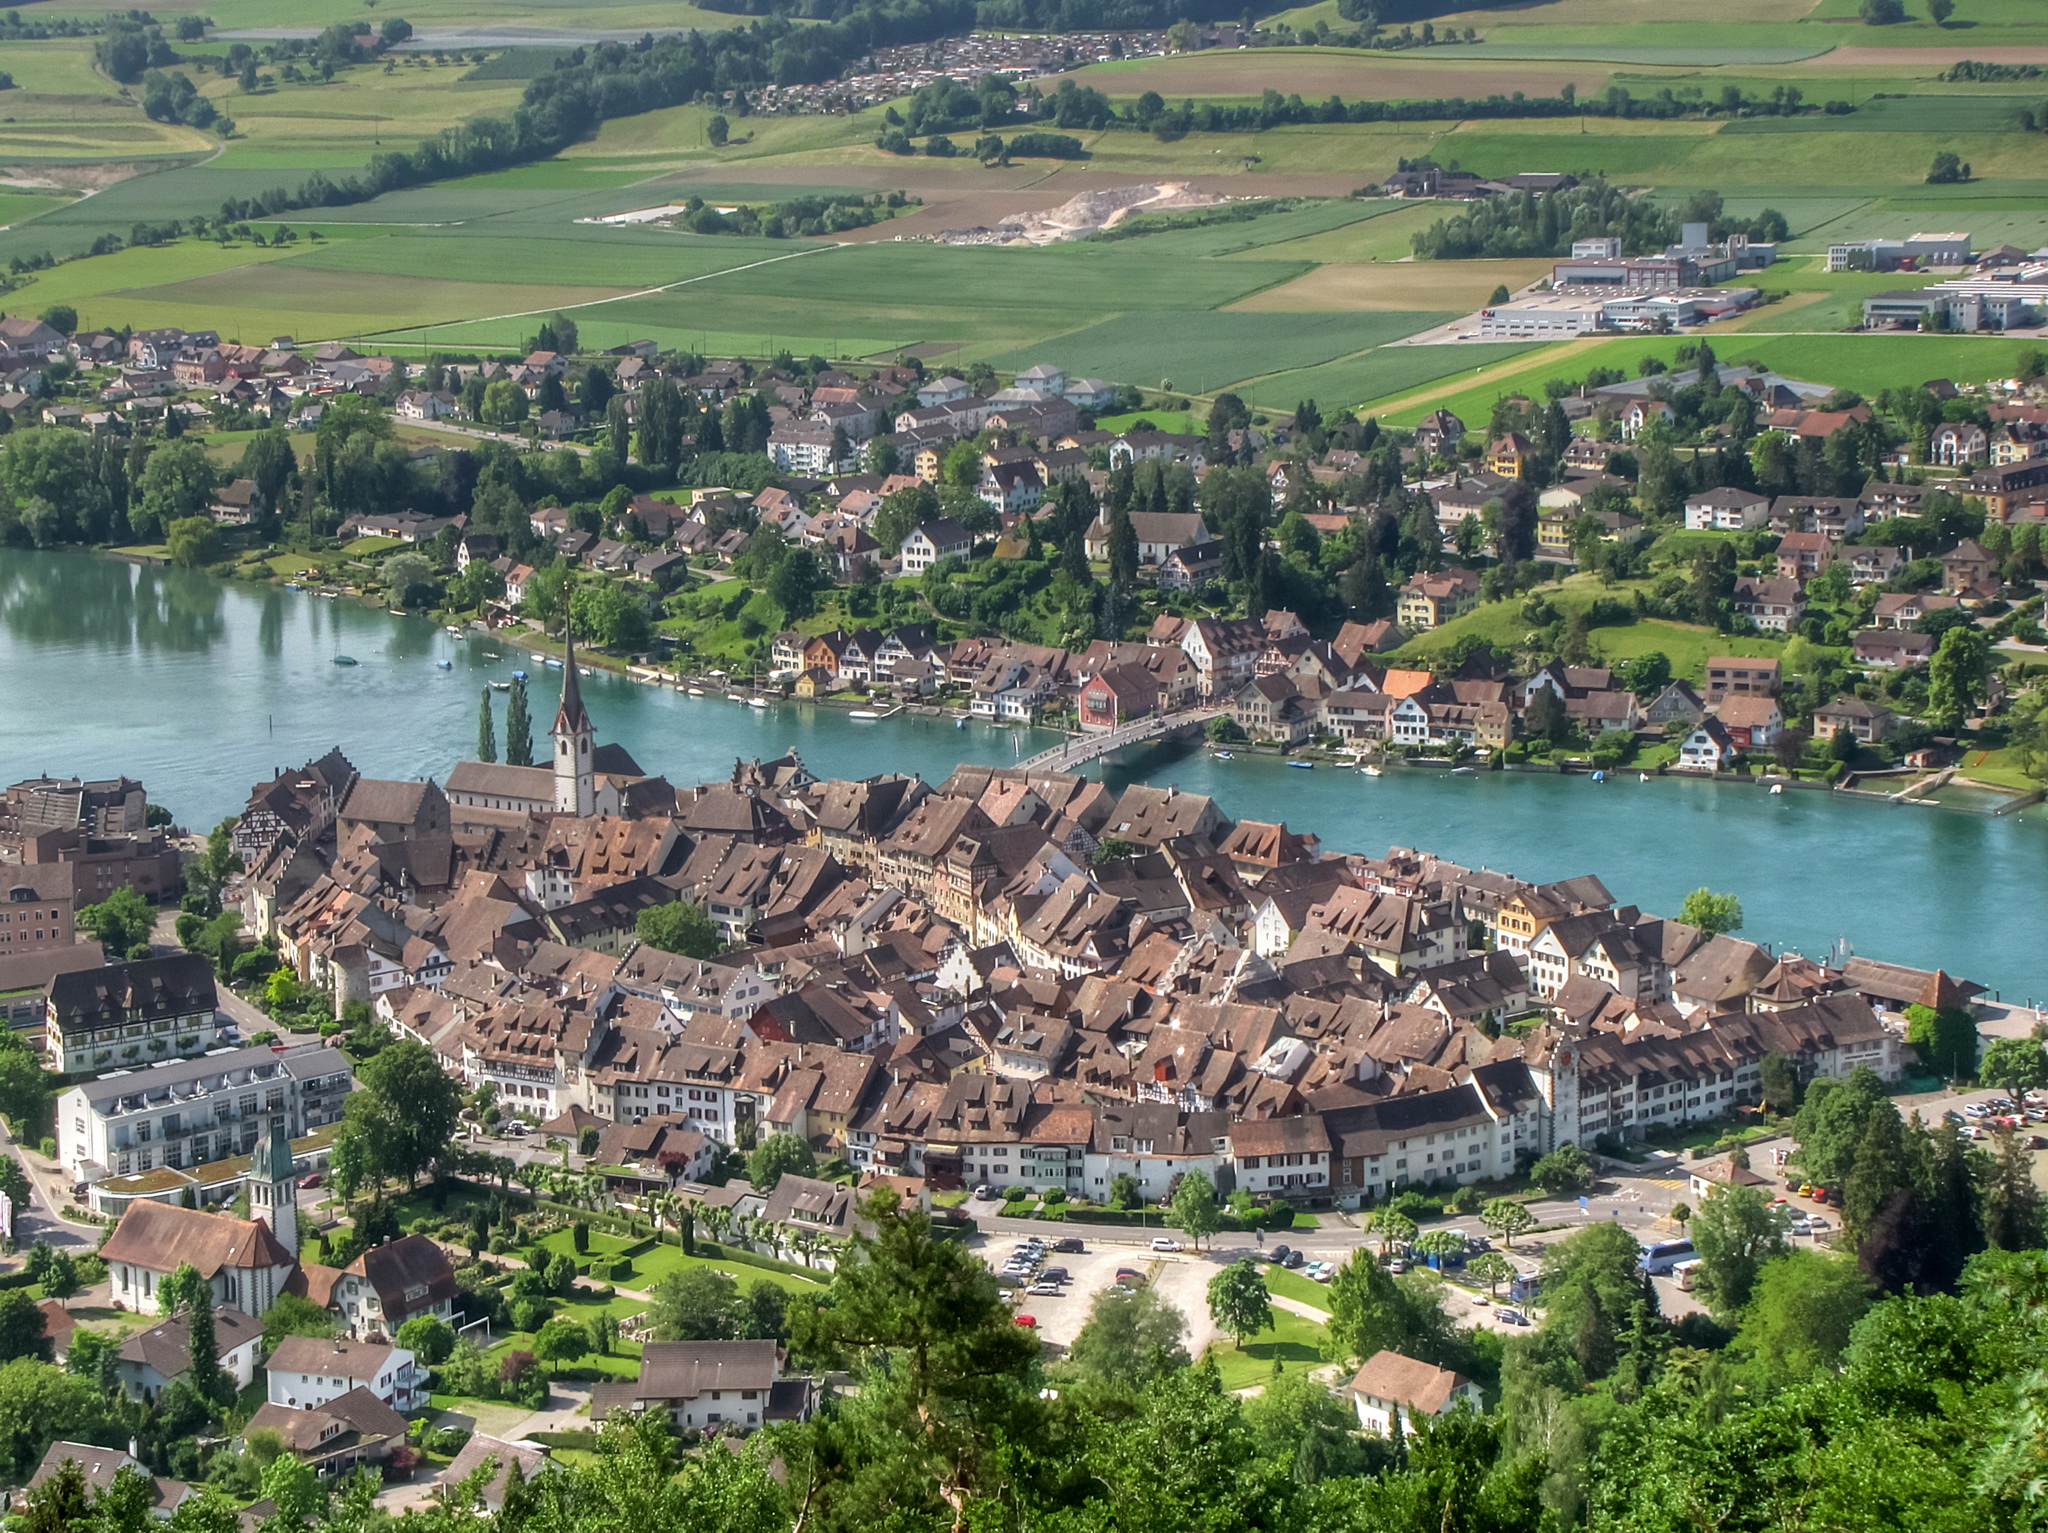 Швейцария маленькая страна. Штайн Швейцария. Штайн на Рейне Швейцария. Штайн-ам-Райн замок. Штейн город в Швейцарии.